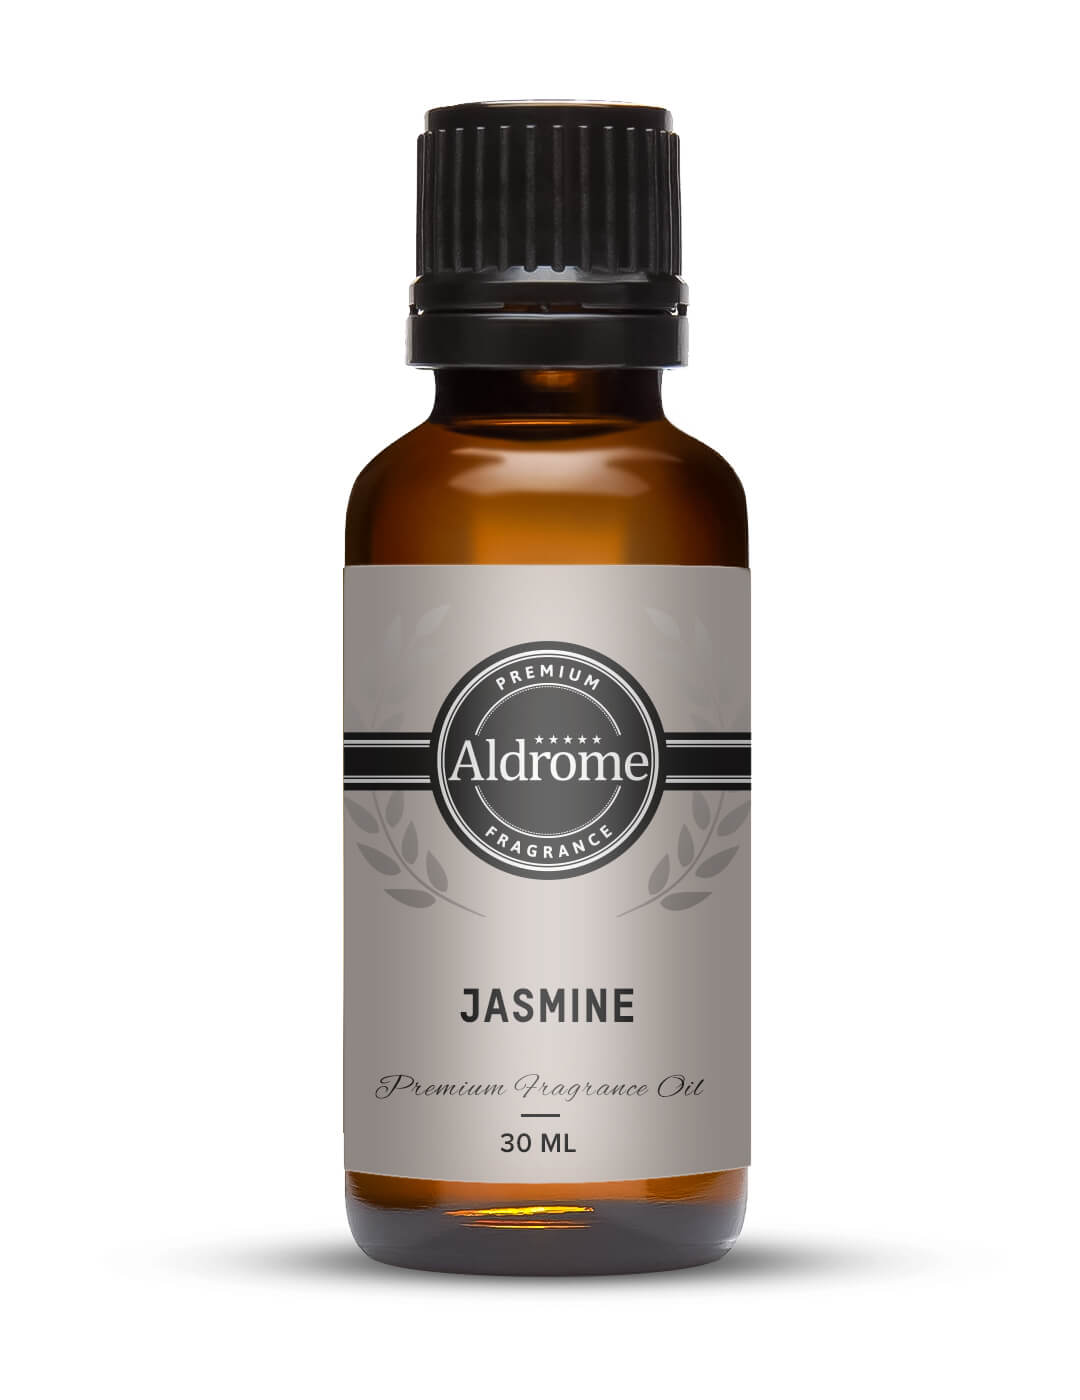 Buy Jasmine Fragrance Oil - 30ml | Aldrome Premium Fragrance Oil